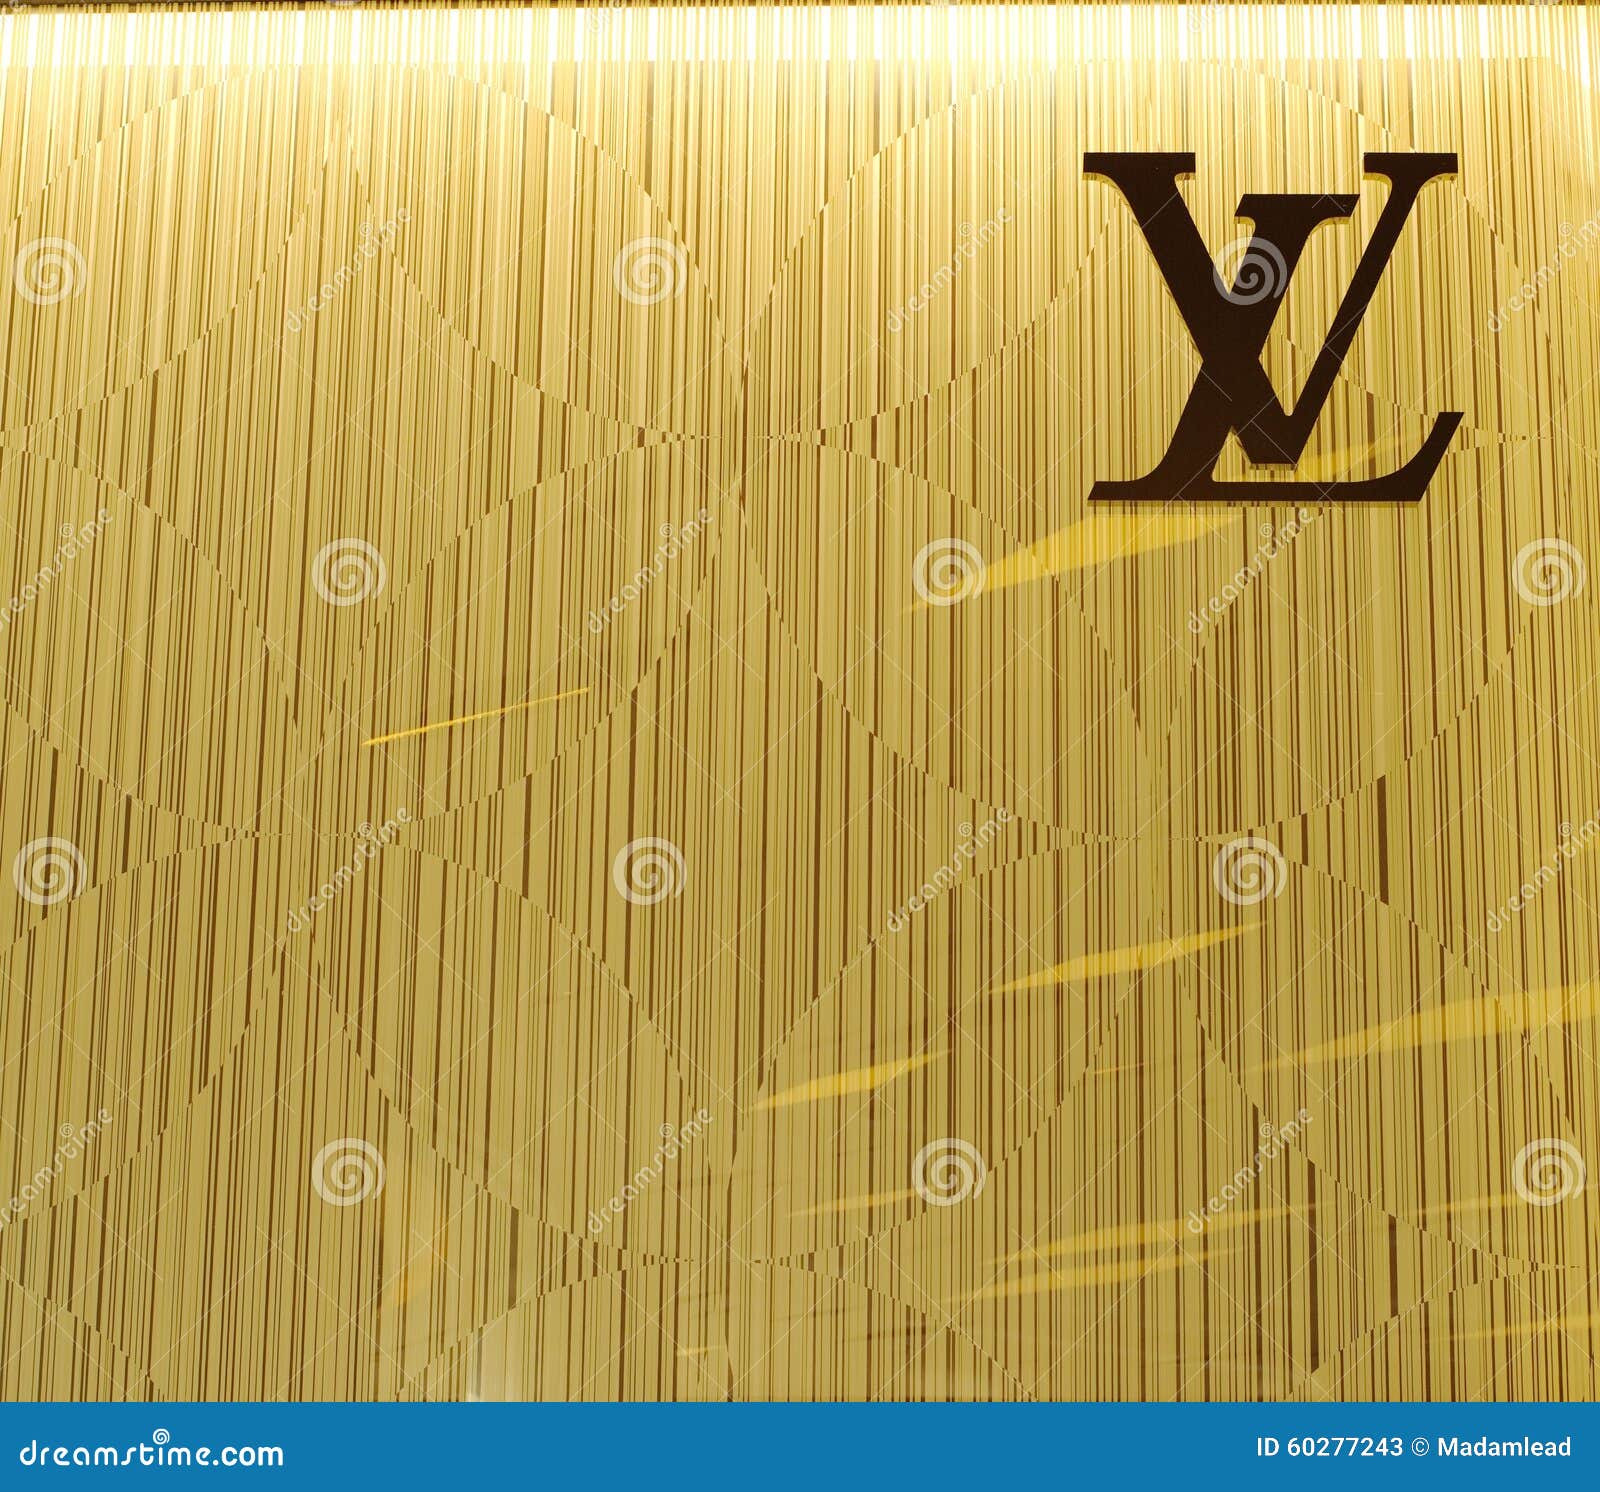 BANGKOK - JUNE 28, 2015: Louis Vuitton Symbol on Monogram Wall